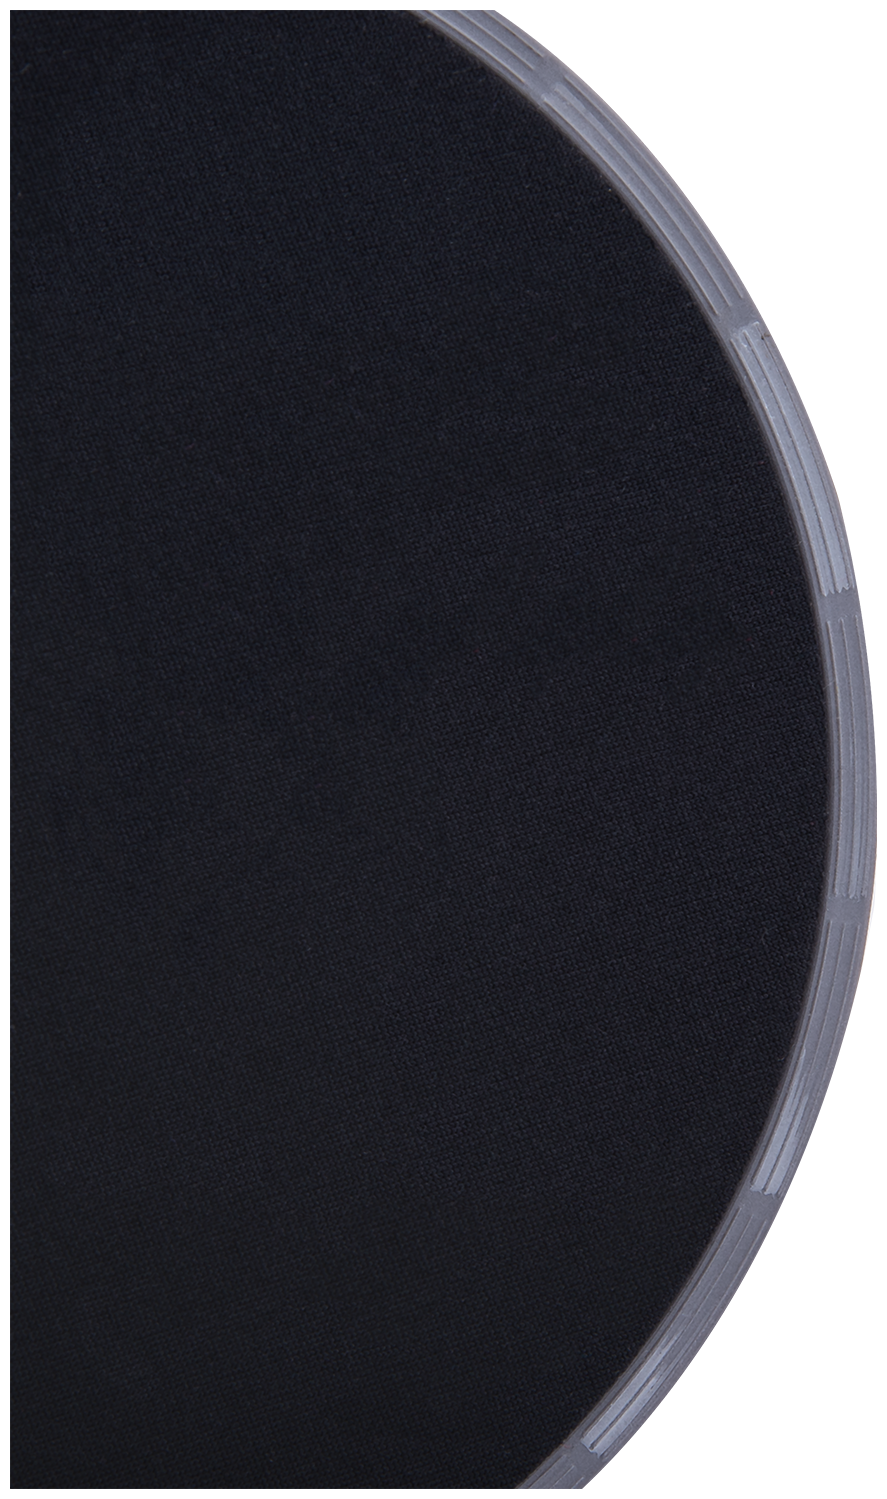 Глайдинг диски для скольжения STARFIT Core FS-101 серый/черный